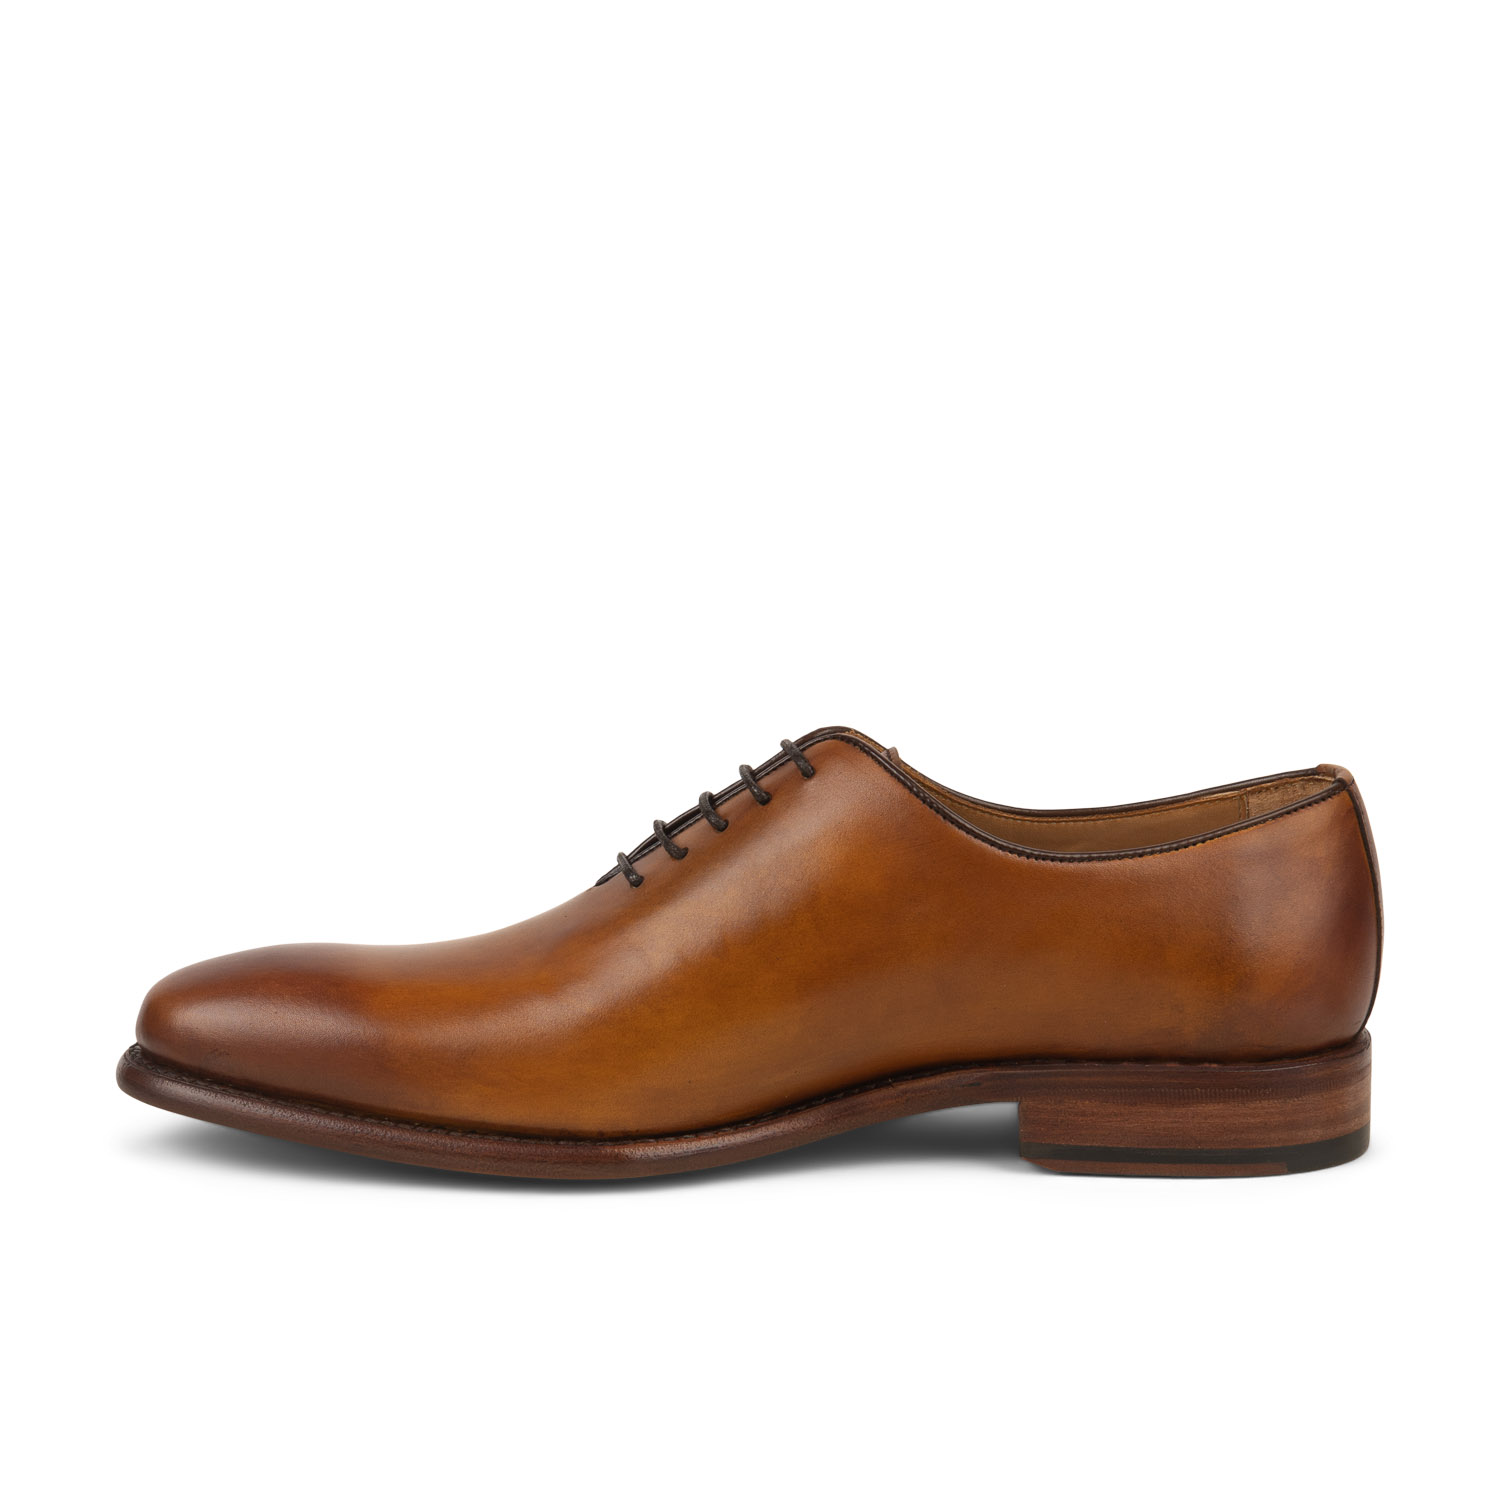 04 - BERONE CUT - BERWICK - Chaussures à lacets - Cuir